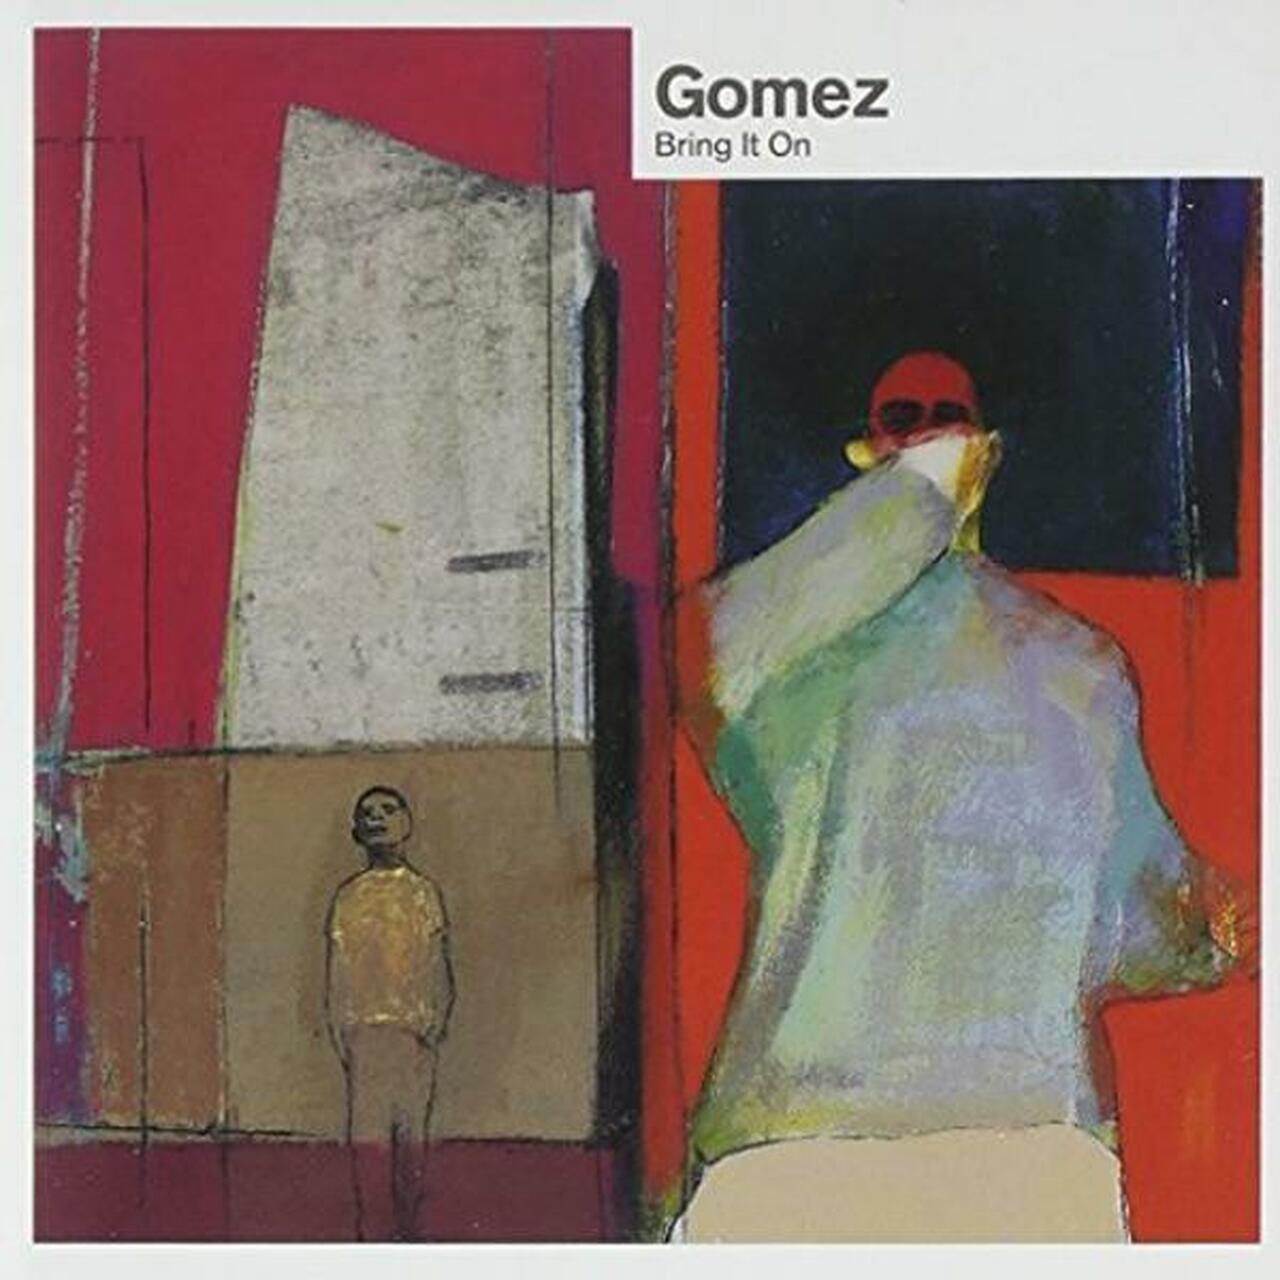 GOMEZ - BRING IT ON - VINYL LP - Wah Wah Records